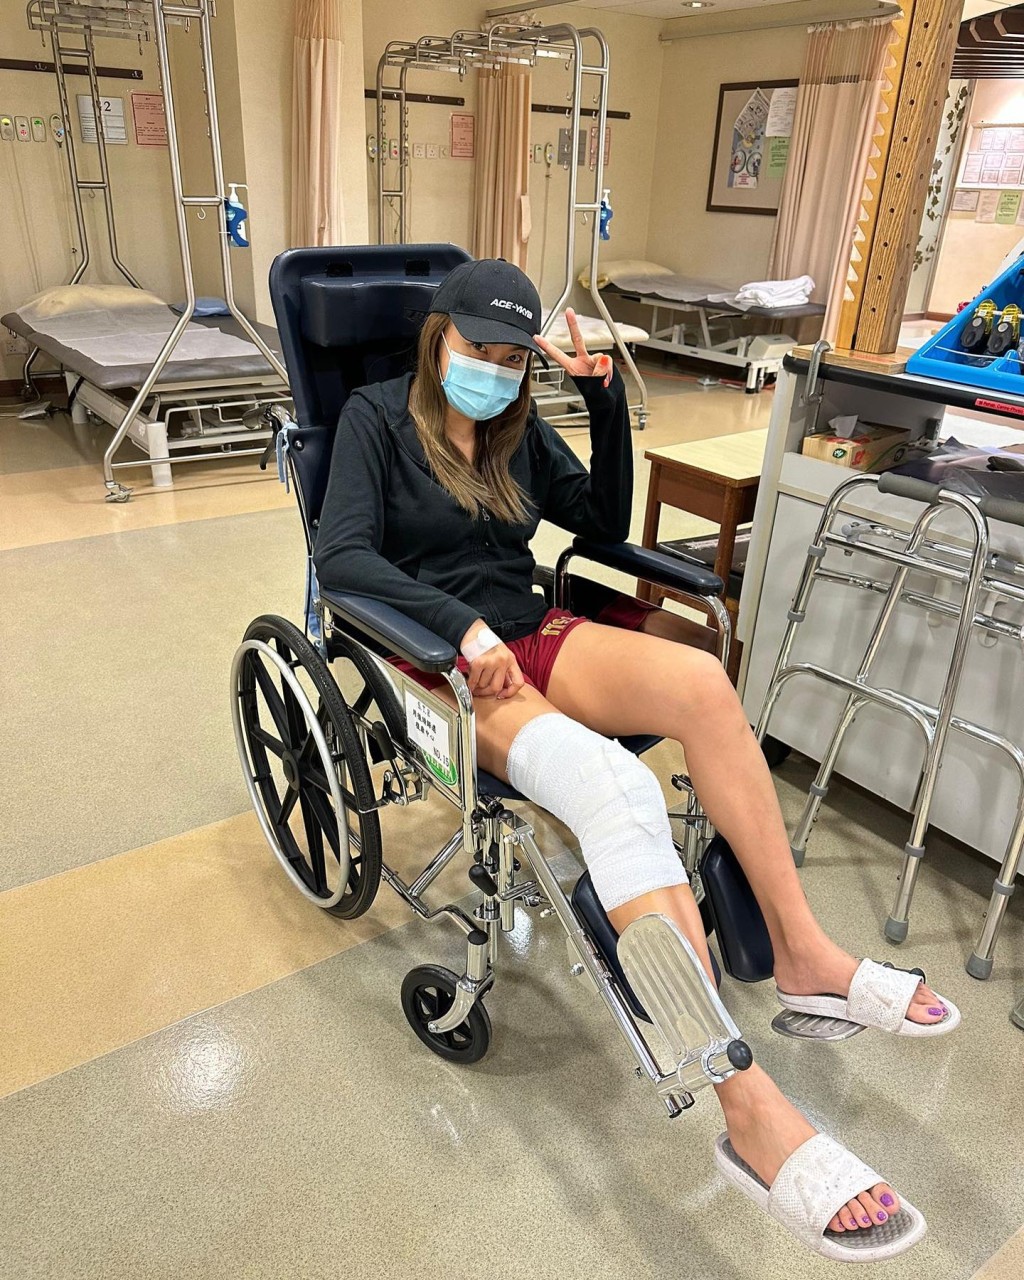 罗苡之今年8月初因膝盖受伤入院。